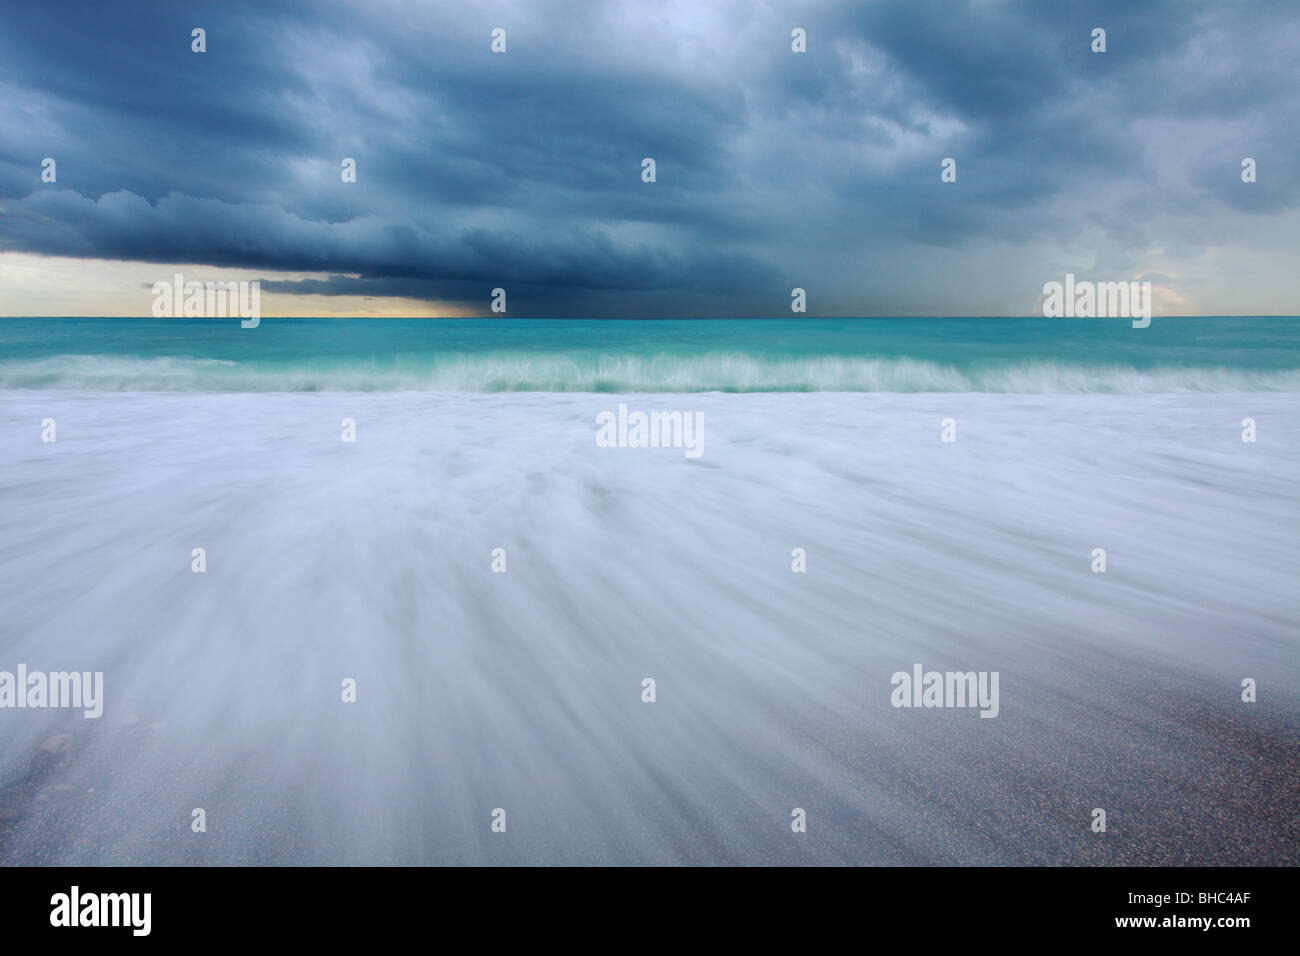 La spiaggia di Nizza sotto un clima burrascoso e nuvoloso giorno fotografato con un obiettivo grandangolare con una bassa esposizione Foto Stock